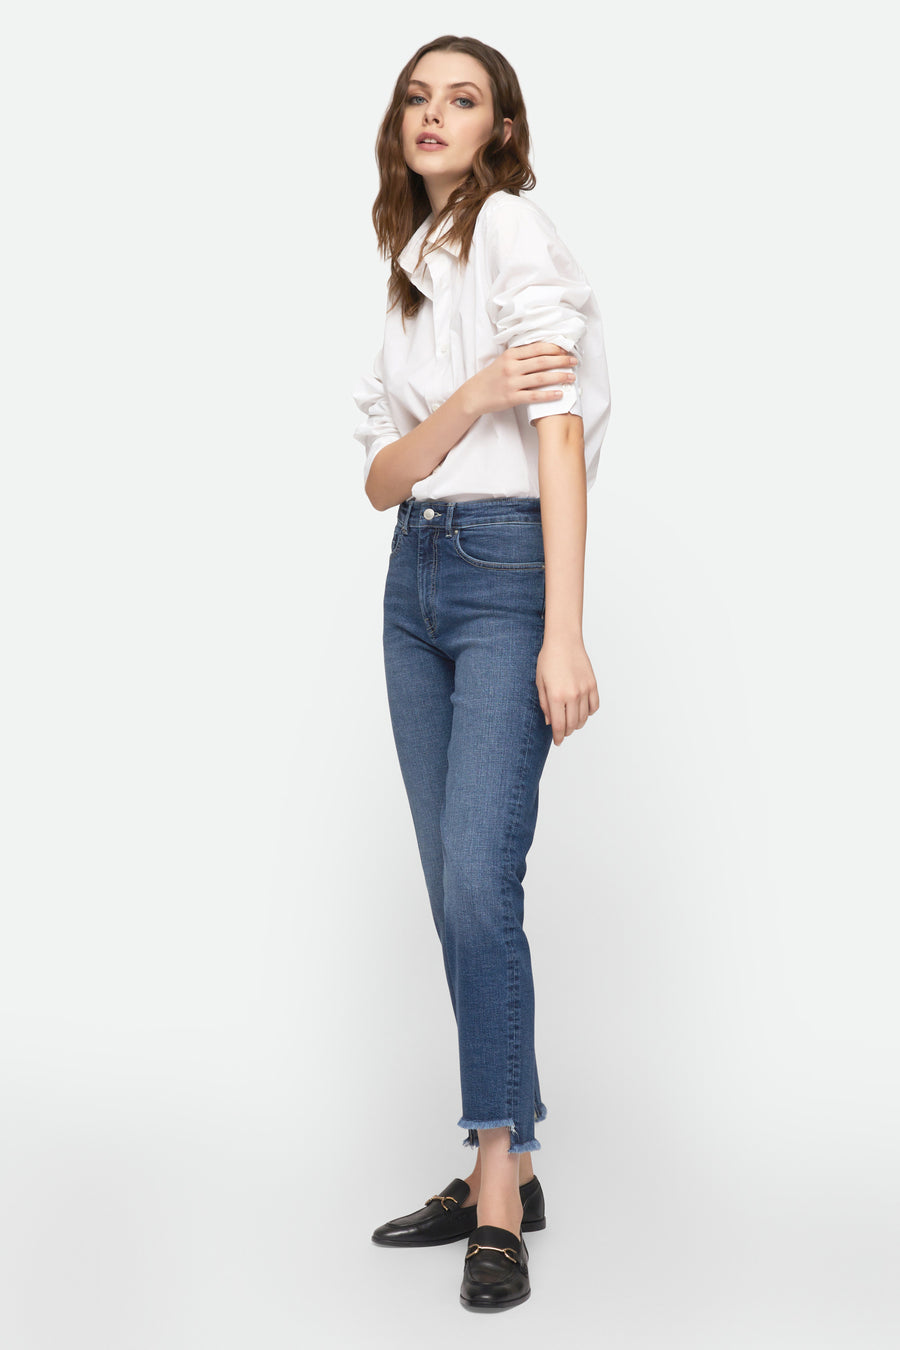 Women's Jeans: Slim, stretch, skinny, mom